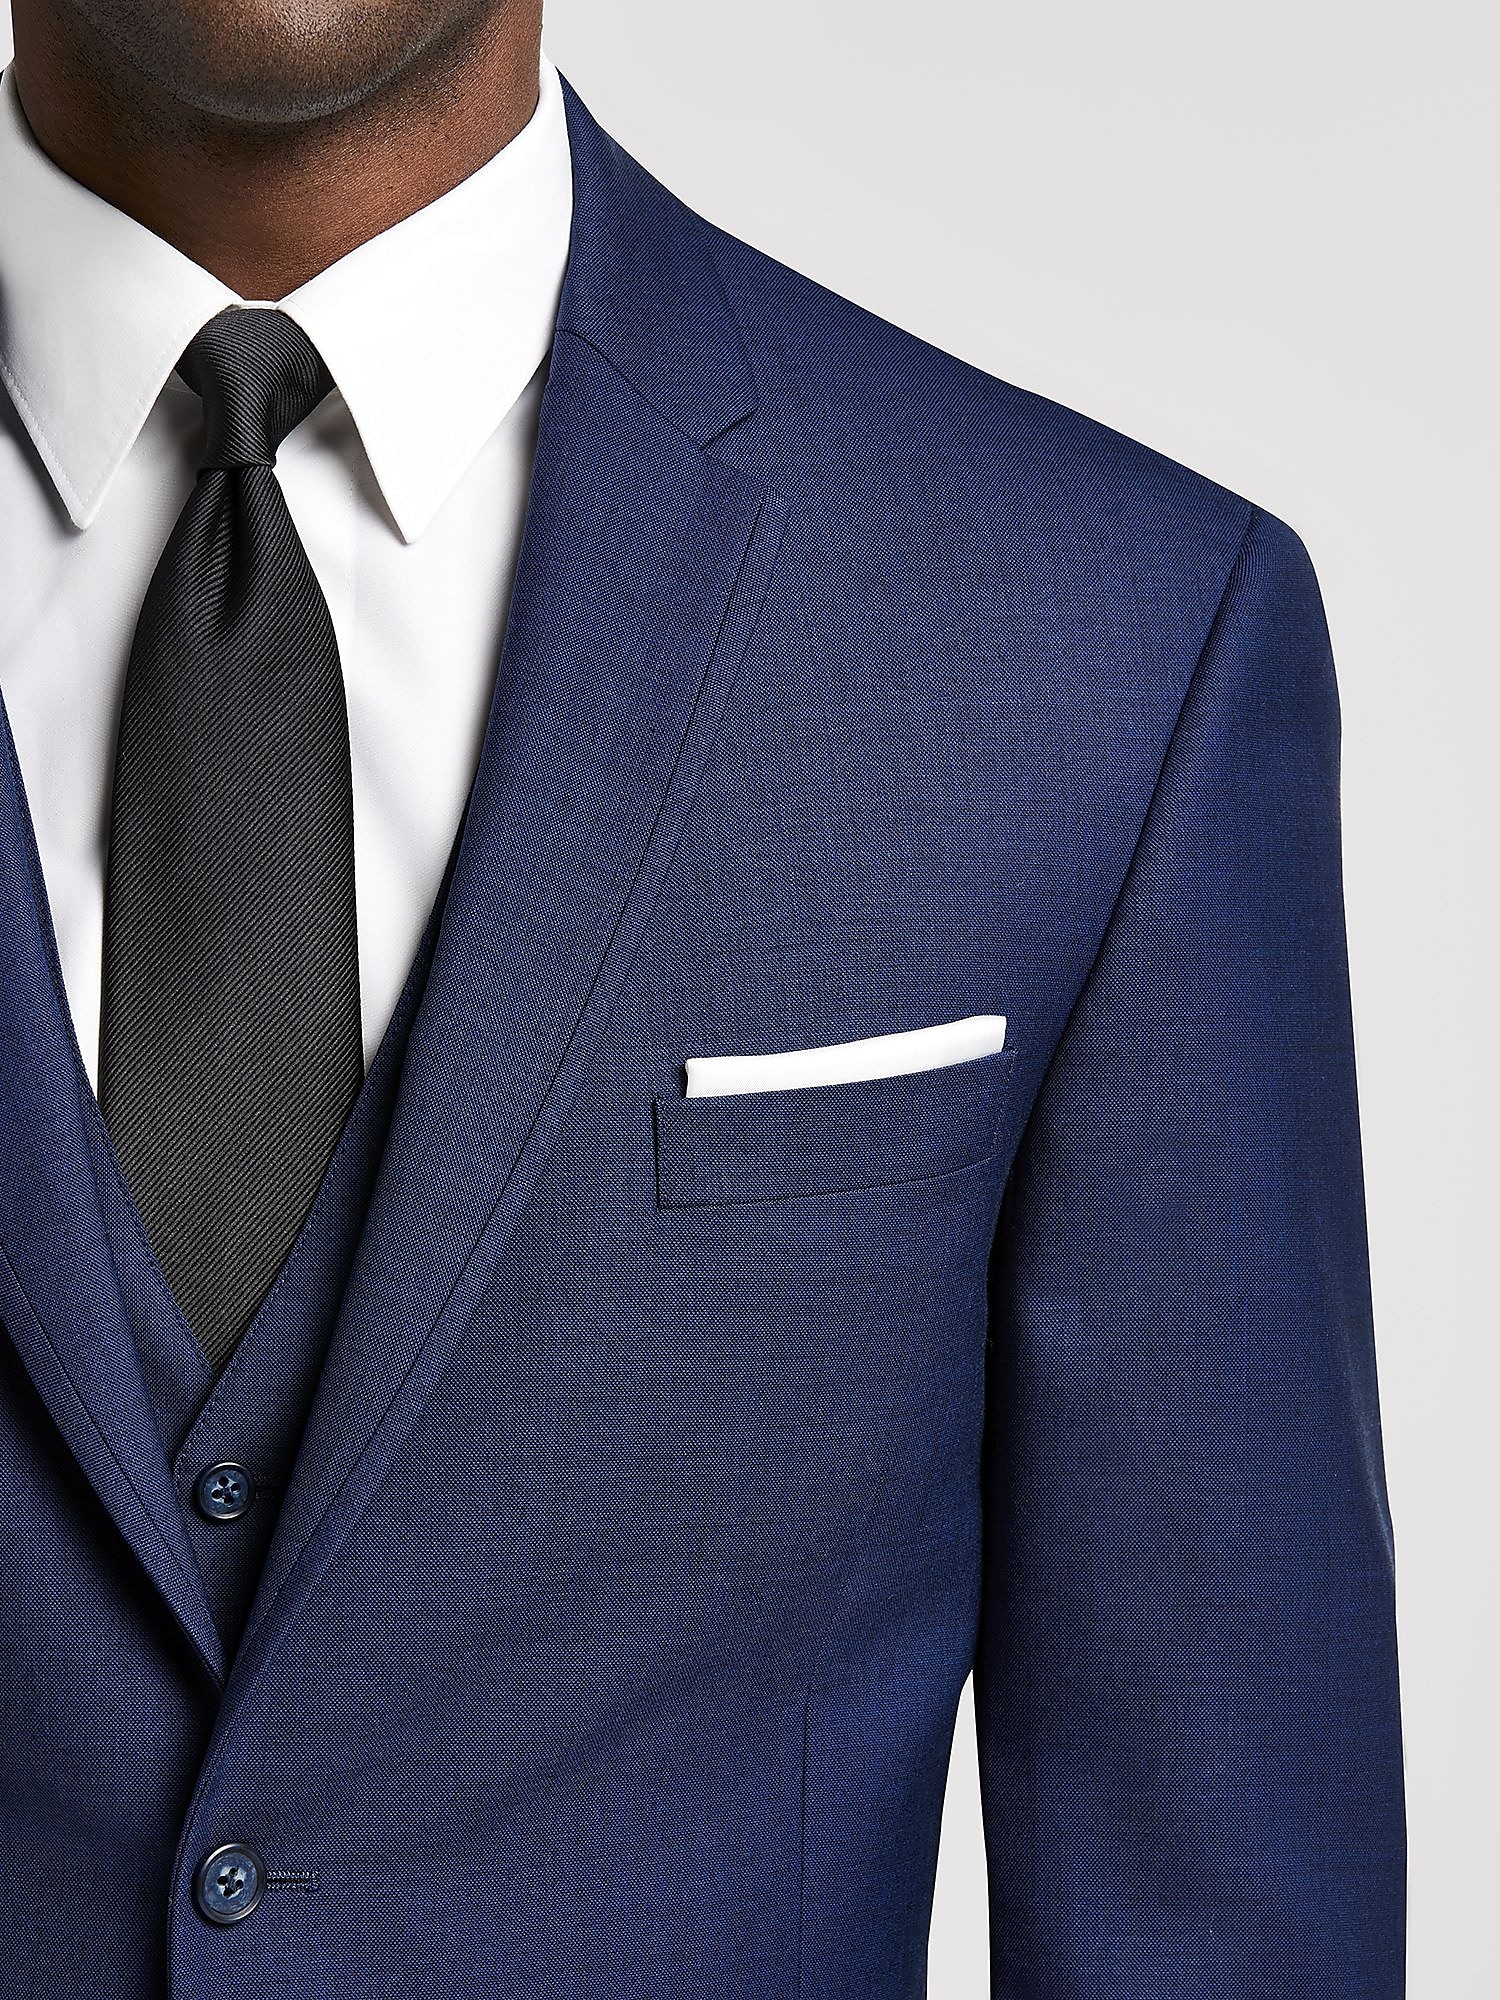 Introducir 57+ imagen calvin klein royal blue suit - Giaoduchtn.edu.vn